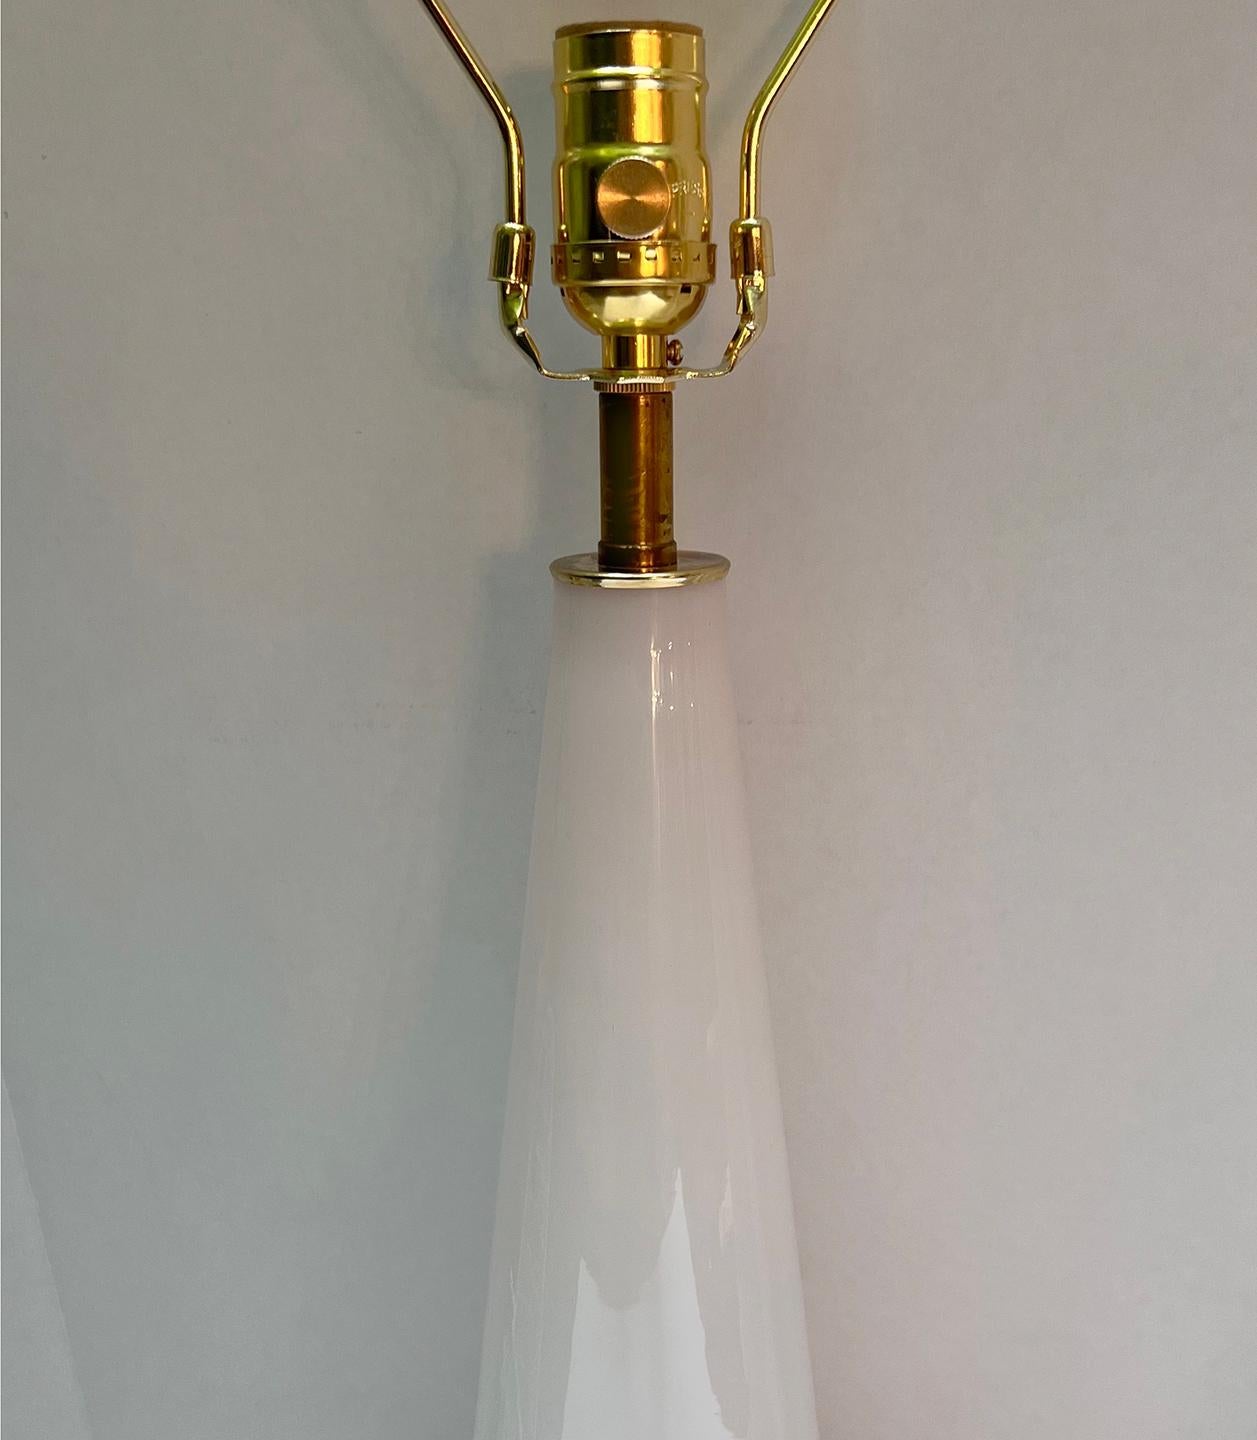 Paire de lampes de table en opaline rose française des années 1940 avec des bases dorées.

Mesures :
Hauteur du corps : 19.5